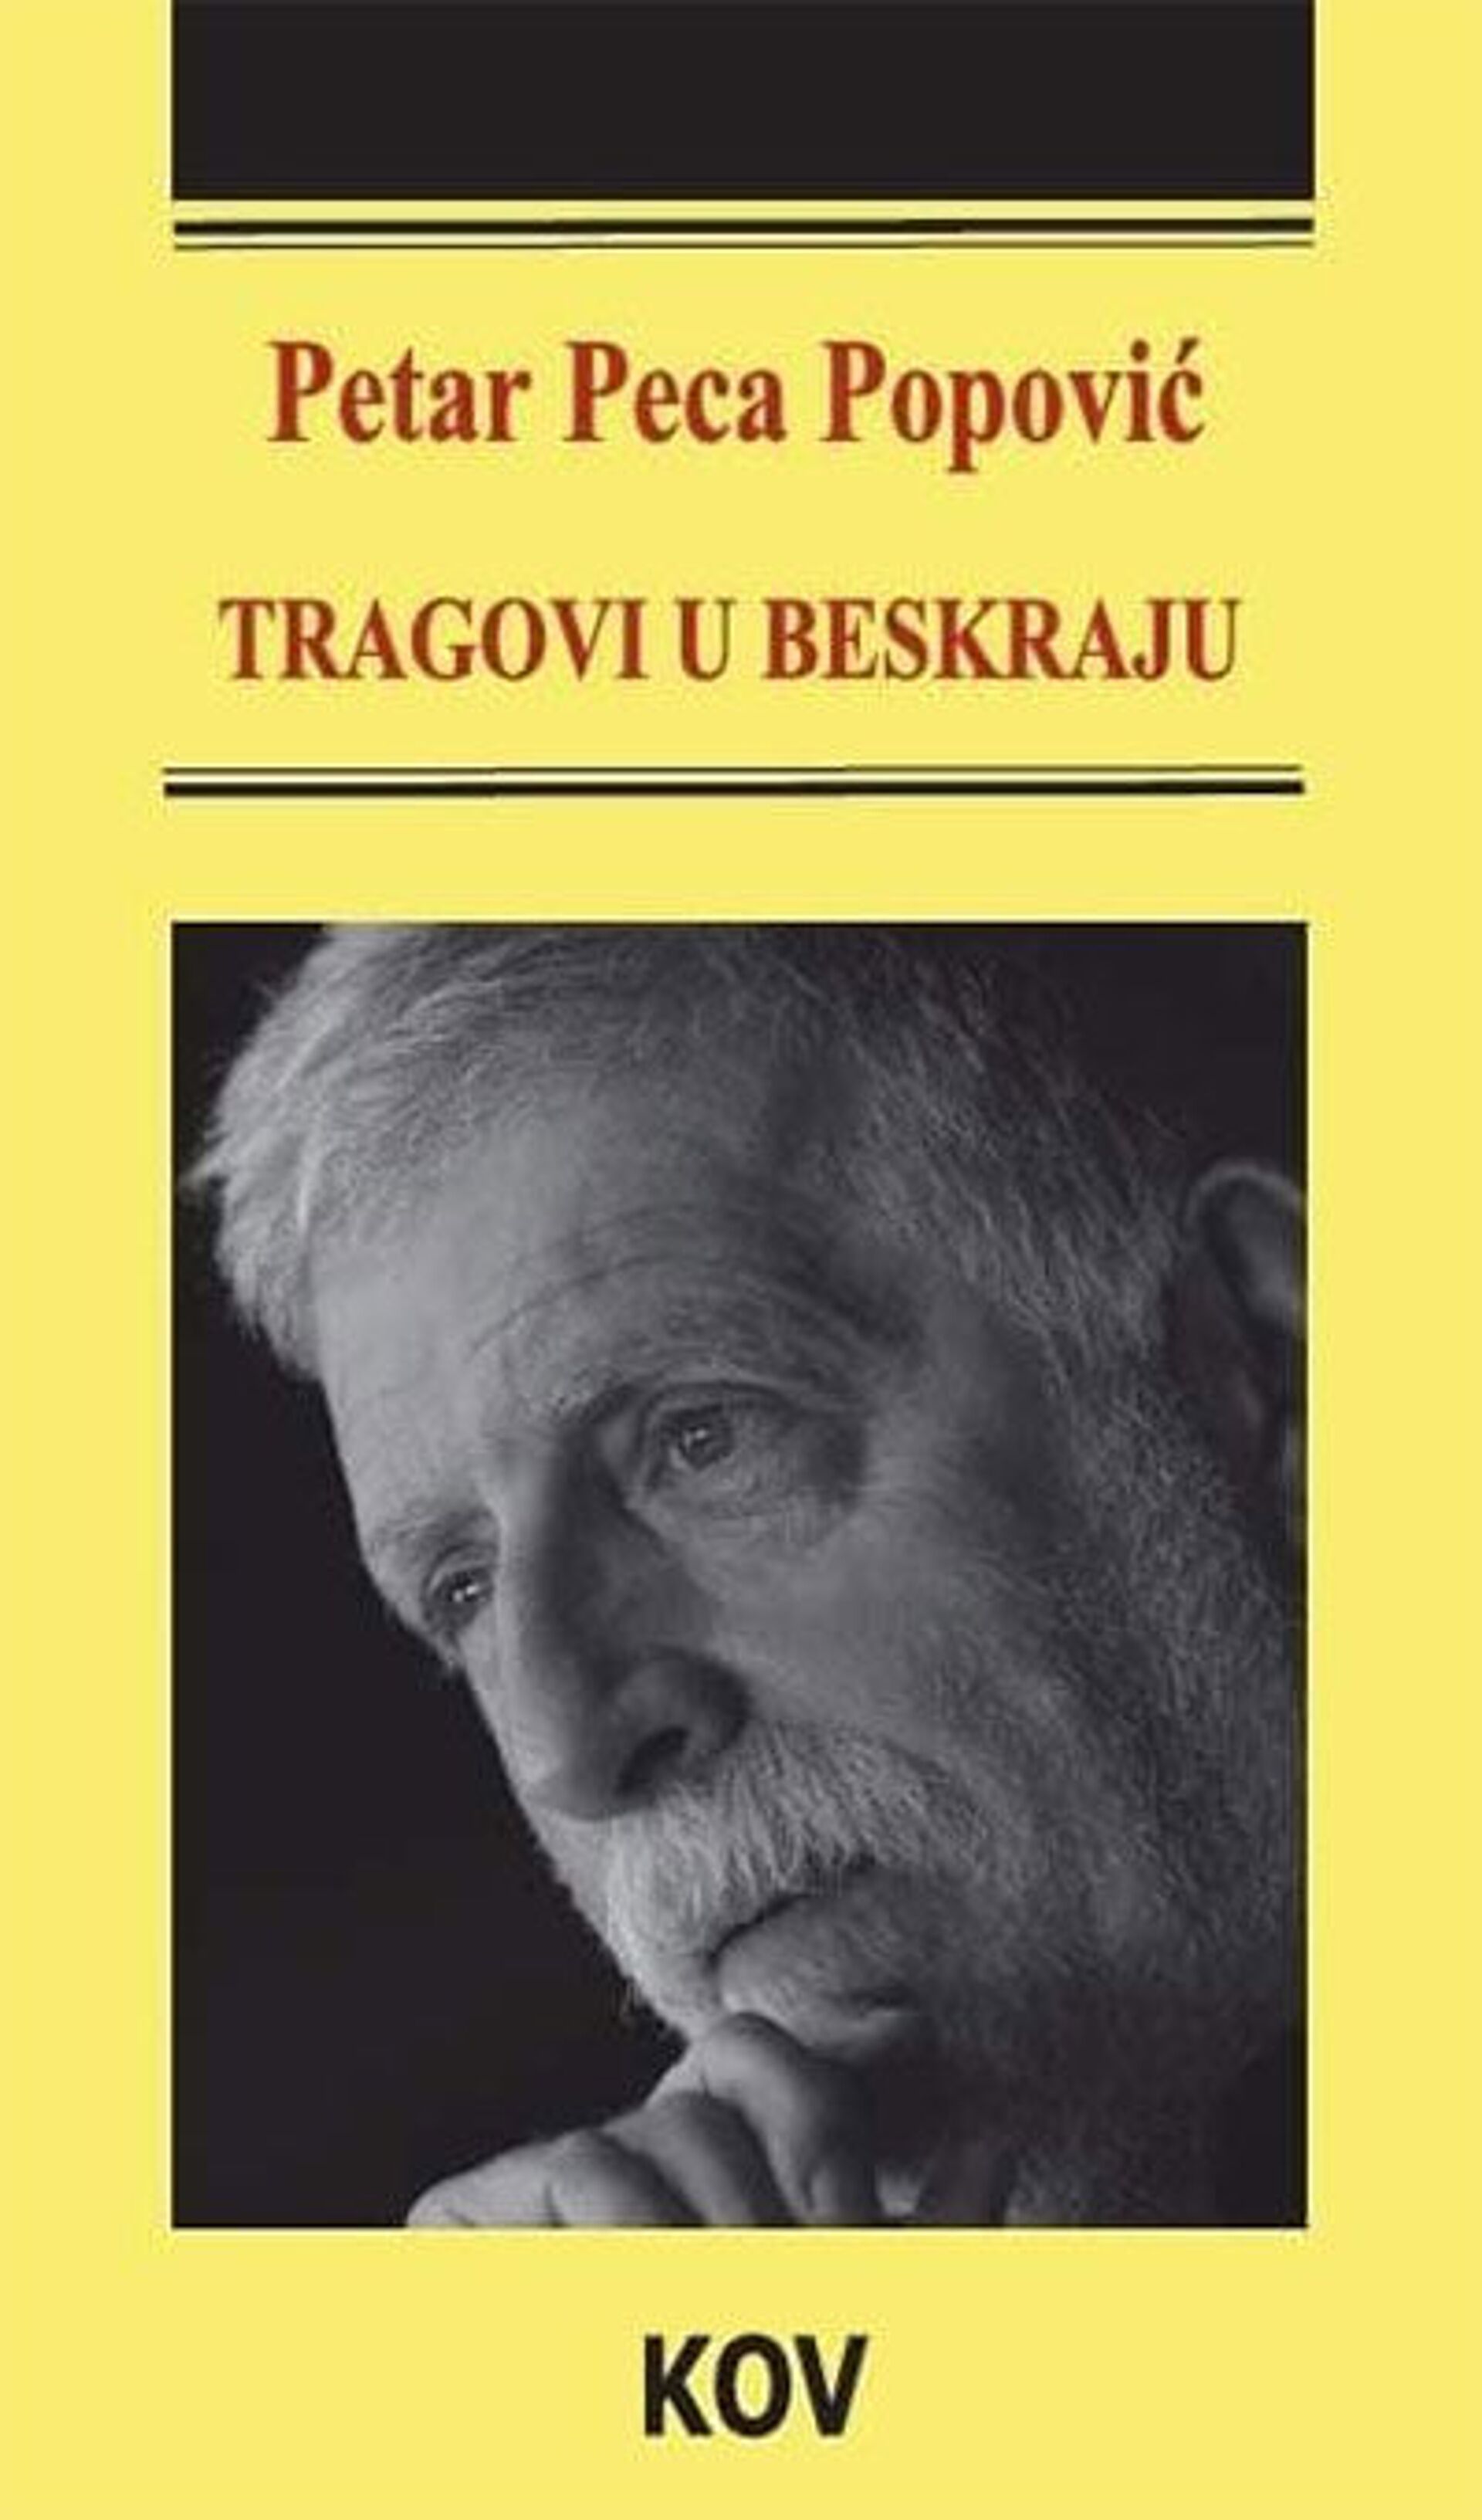 Naslovnica knjige „Tragovi u beskraju“ Pece Popovića - Sputnik Srbija, 1920, 13.07.2021